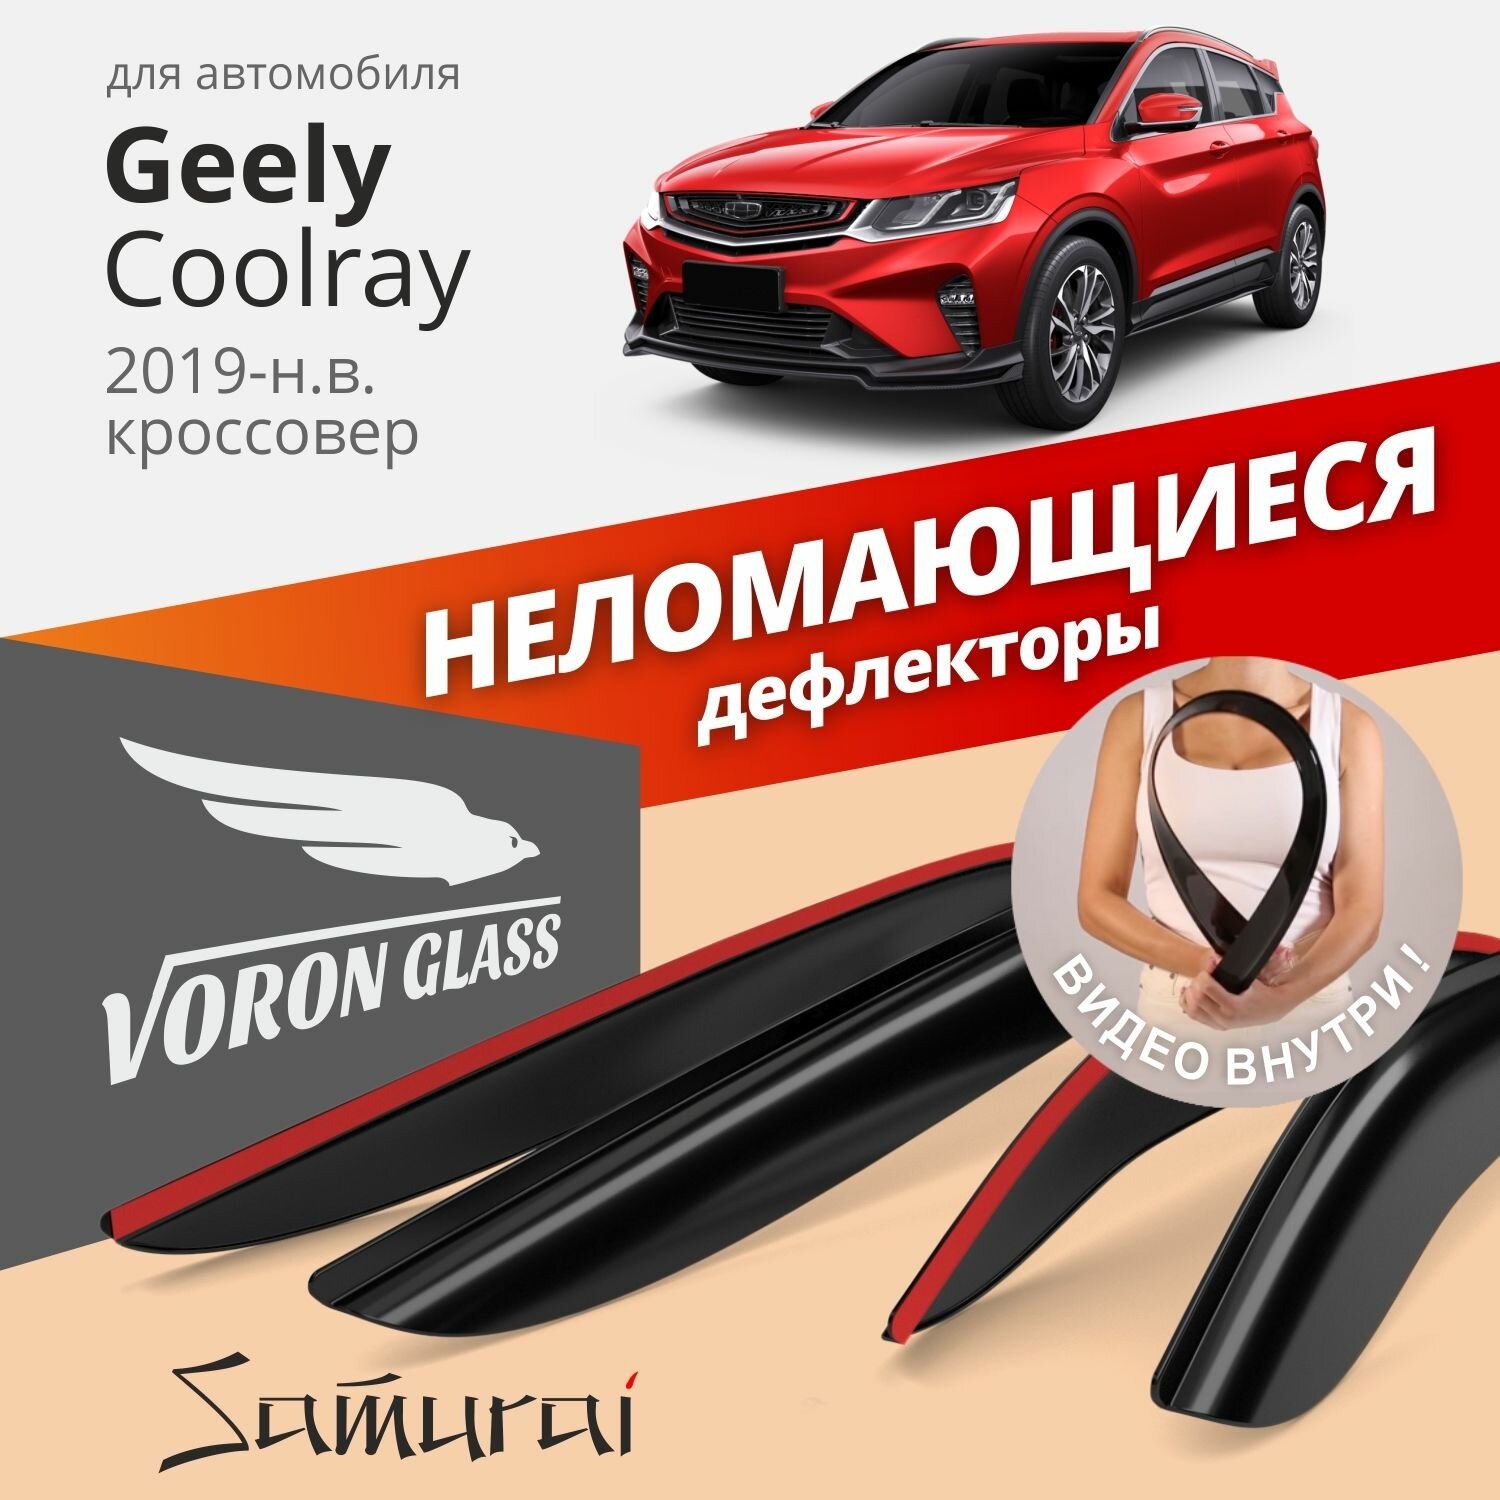 Дефлекторы Voron Glass на автомобиль Geely Coolray 2019-н. в, накладные, неломающиеся, 4шт